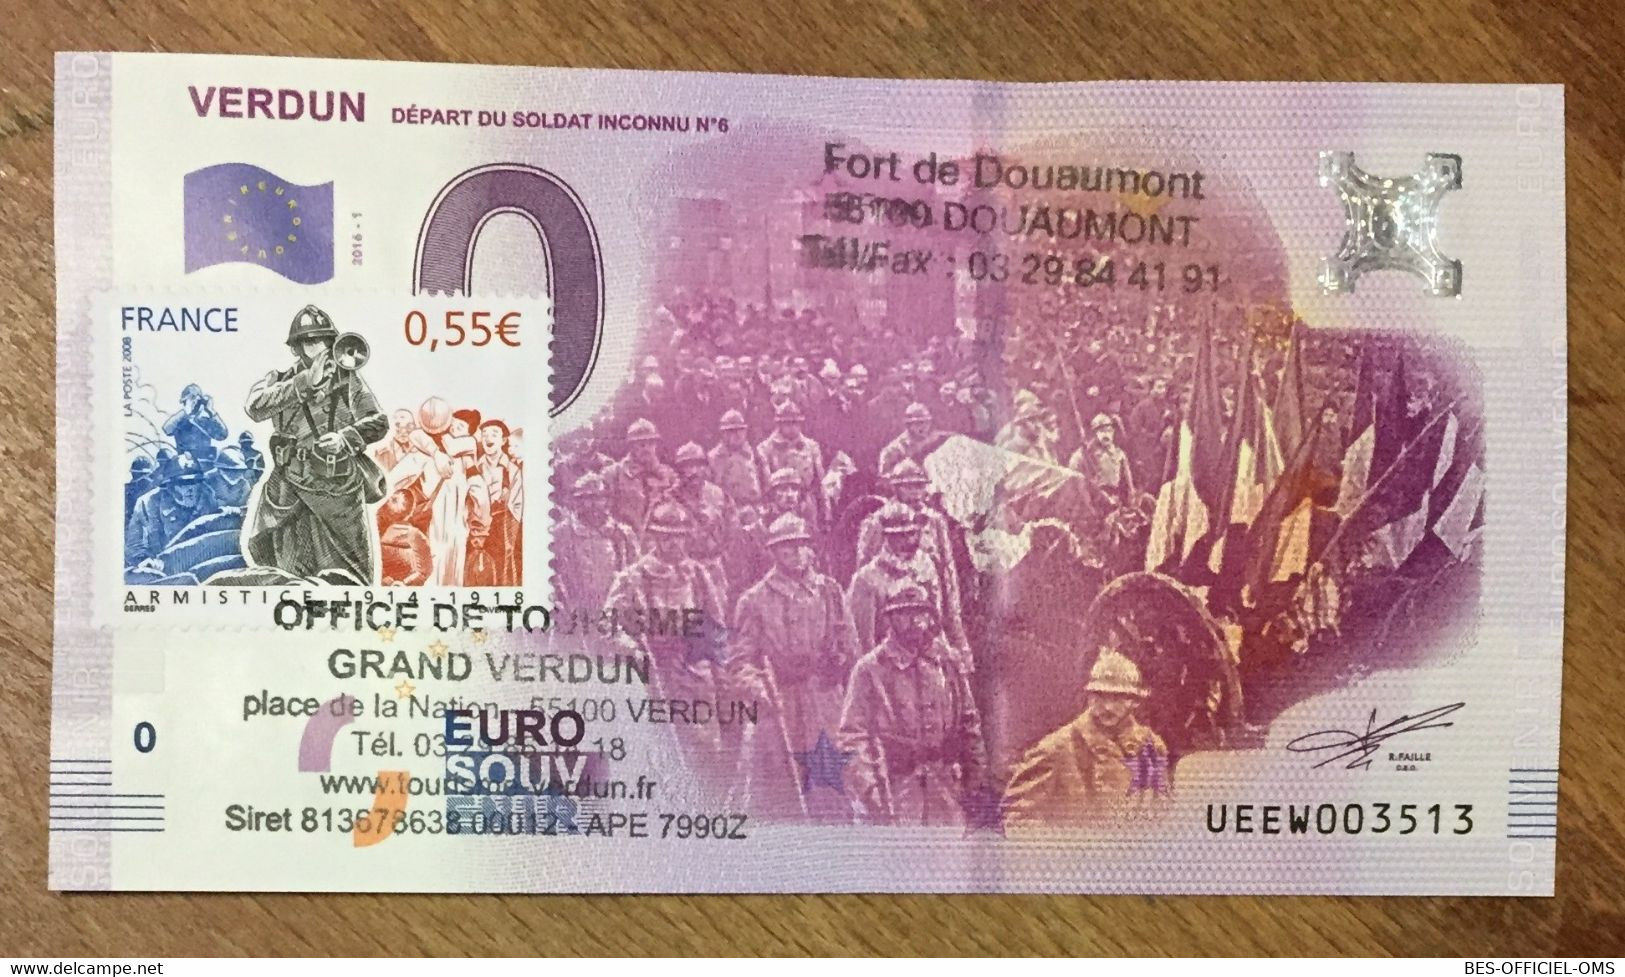 2016 BILLET 0 EURO SOUVENIR DPT 55 VERDUN SOLDAT INCONNU + TIMBRE ZERO 0 EURO SCHEIN BANKNOTE PAPER MONEY BANK - Essais Privés / Non-officiels